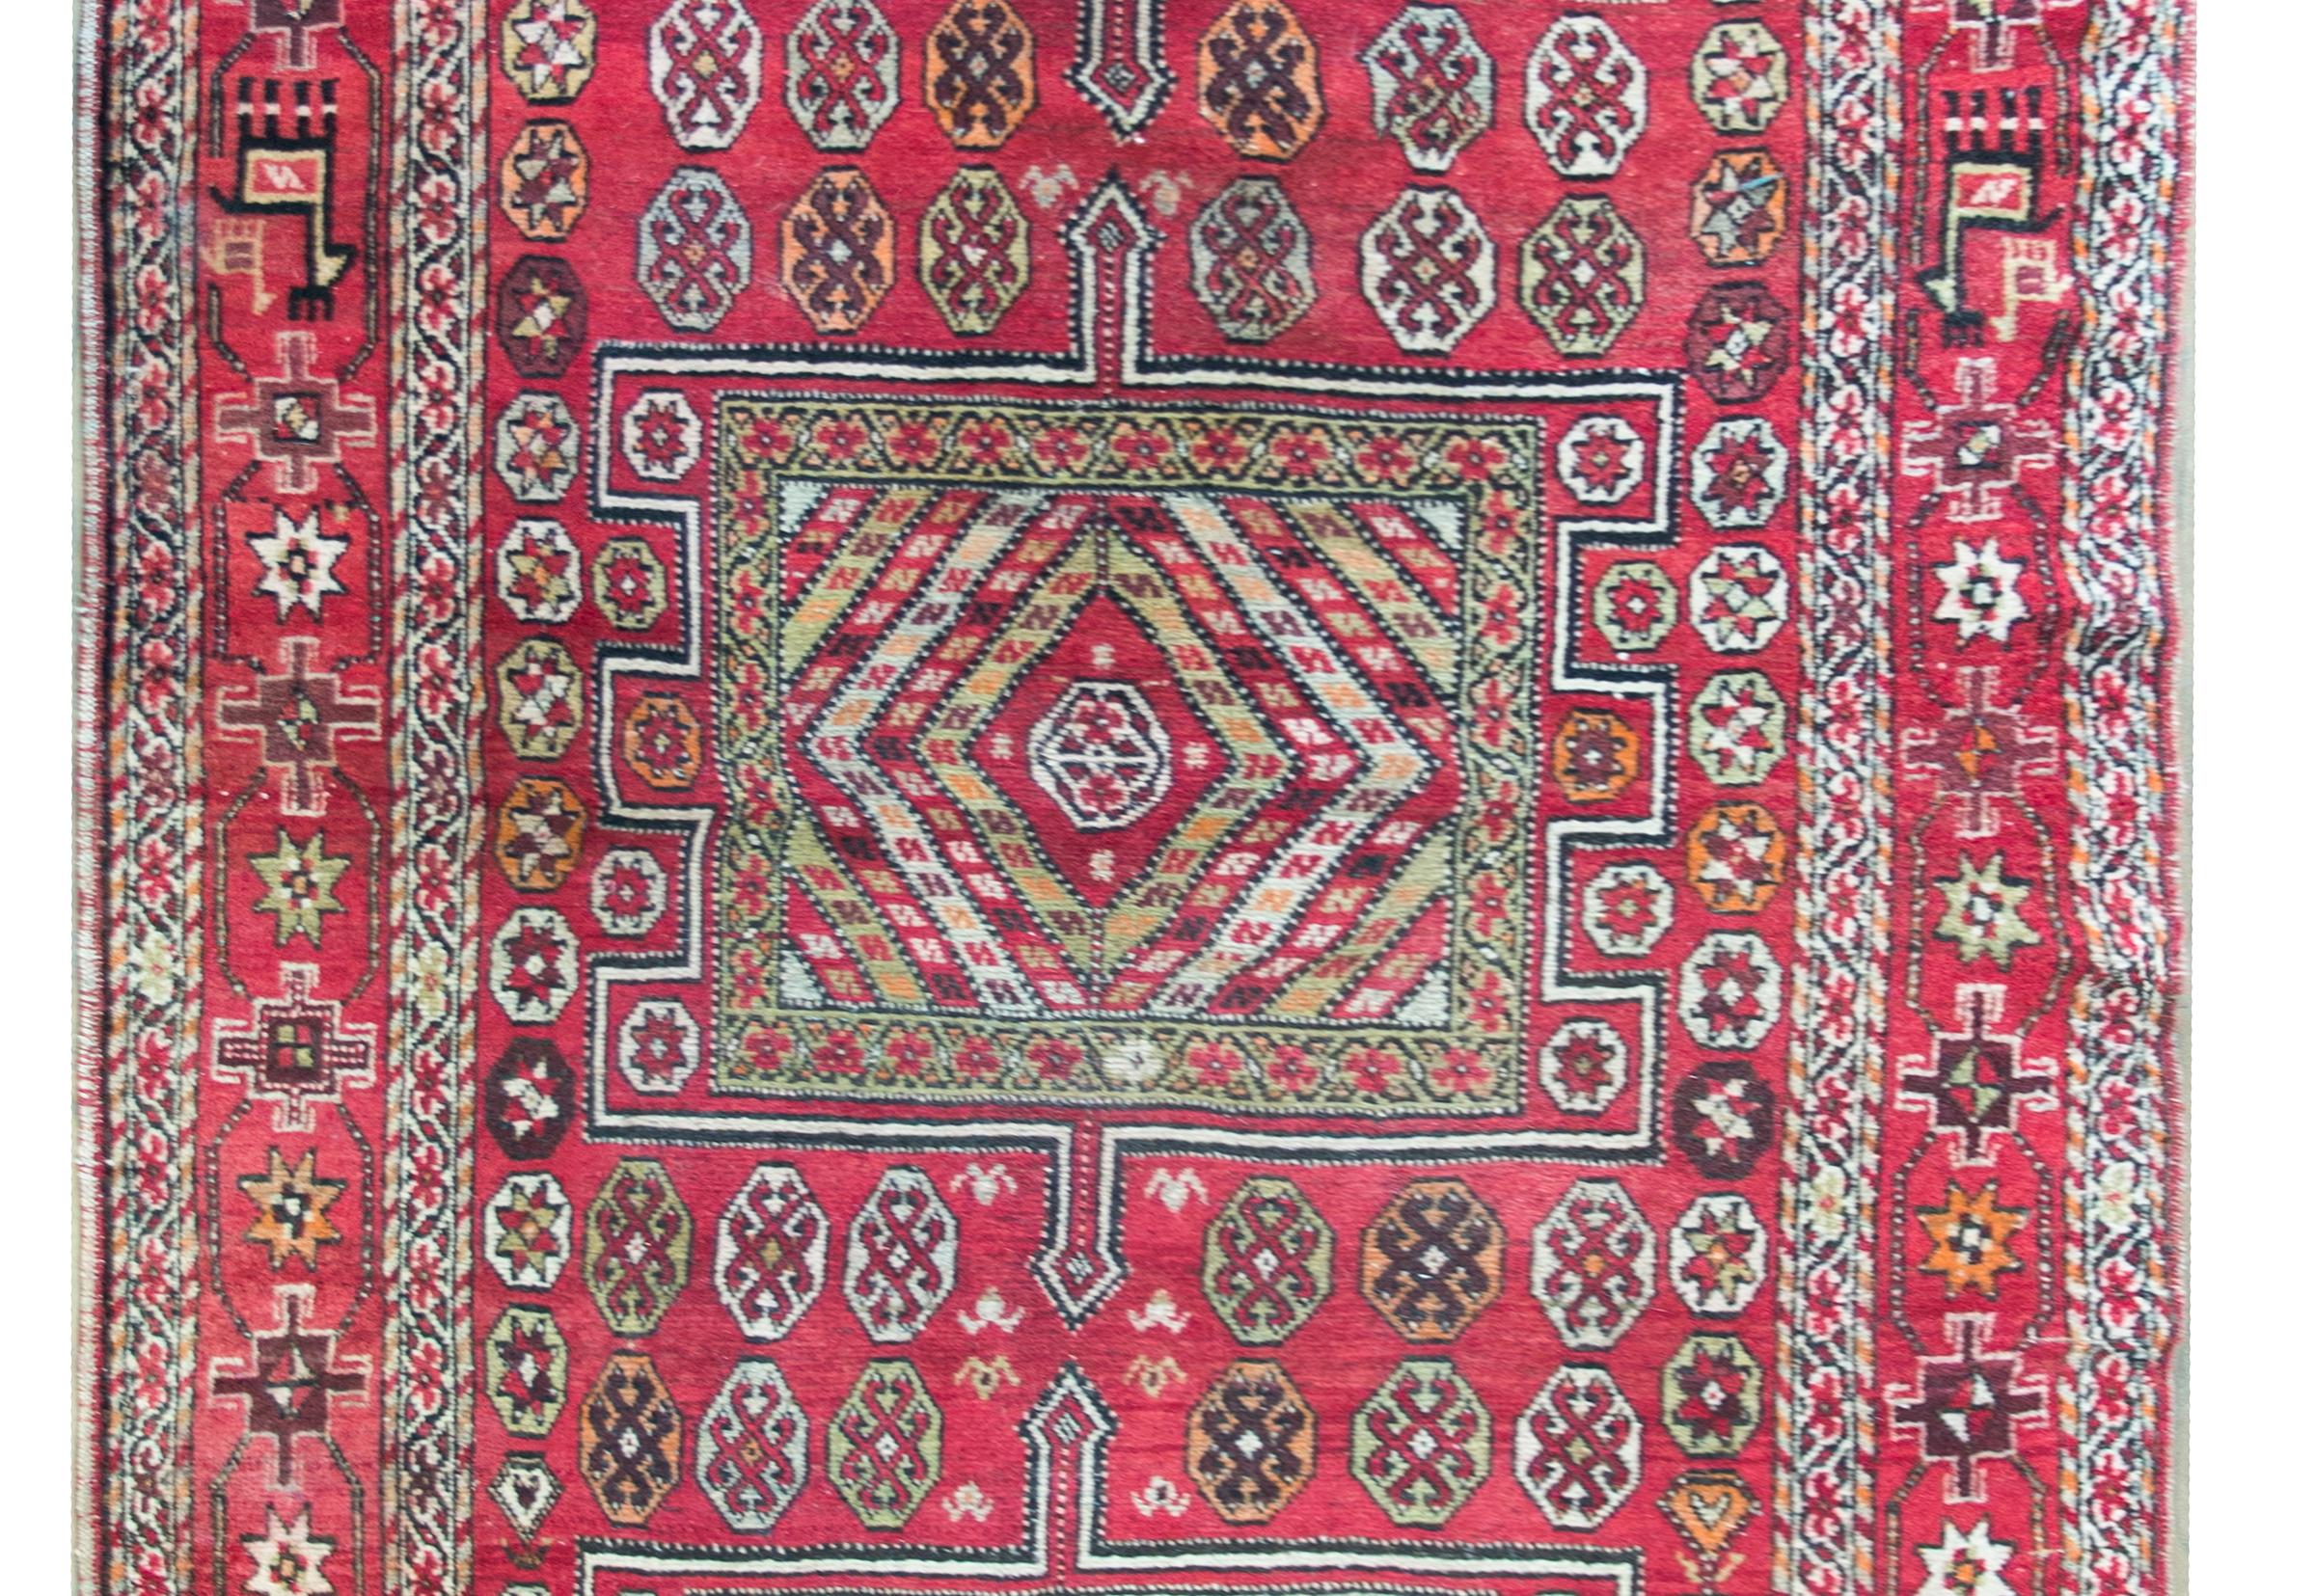 Ein verspielter türkischer Teppich aus Anatolien aus dem frühen 20. Jahrhundert mit drei großen geometrischen Medaillons inmitten eines Feldes mit stilisierten Blumen, umgeben von mehreren dünnen, floral gemusterten Streifen, die alle in leuchtenden